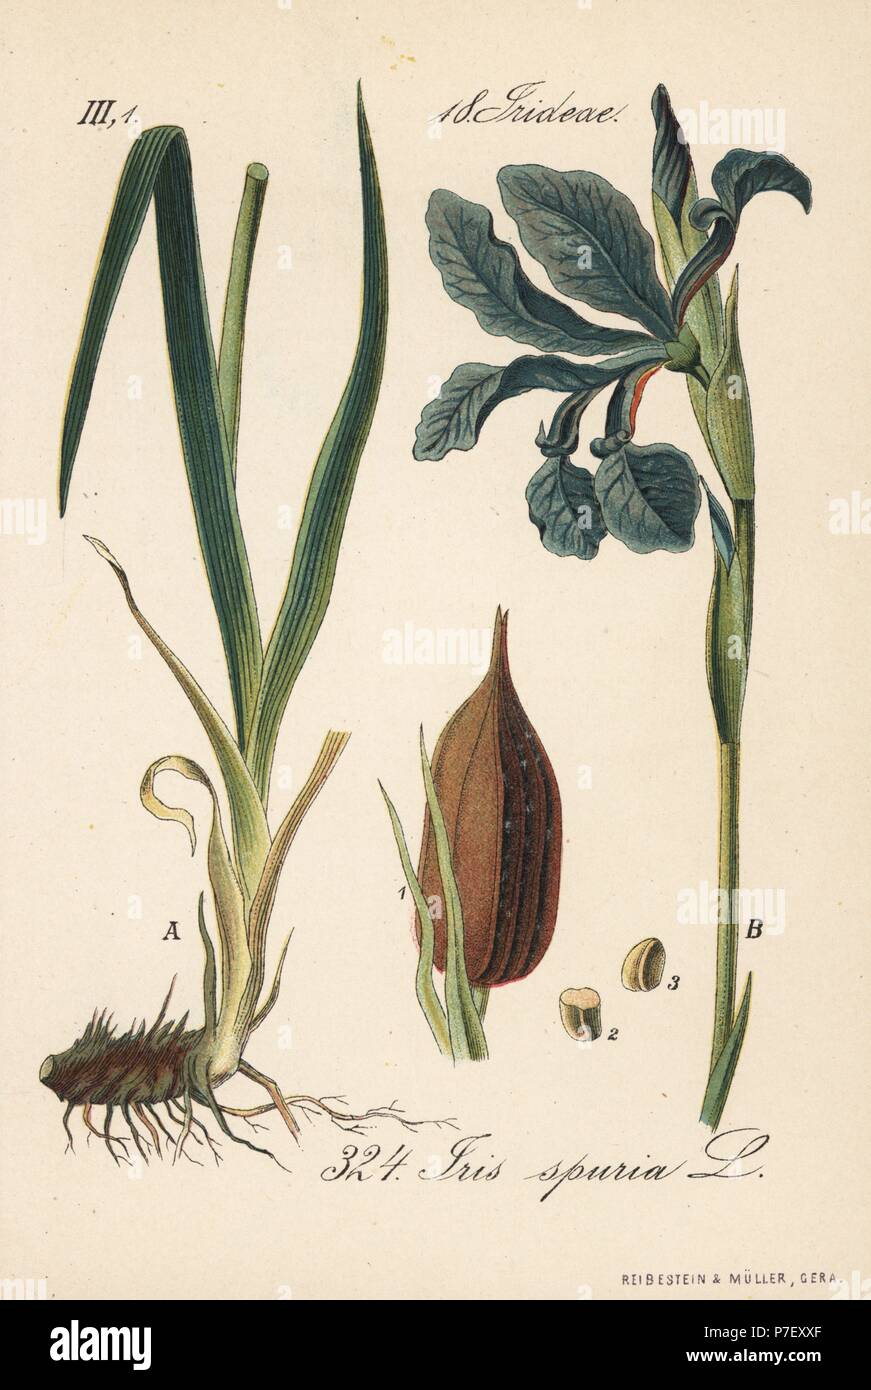 Beardless iris, Iris spuria. Handcoloured lithograph from Diederich von Schlechtendal's German Flora (Flora von Deutschland), Jena, 1871. Stock Photo